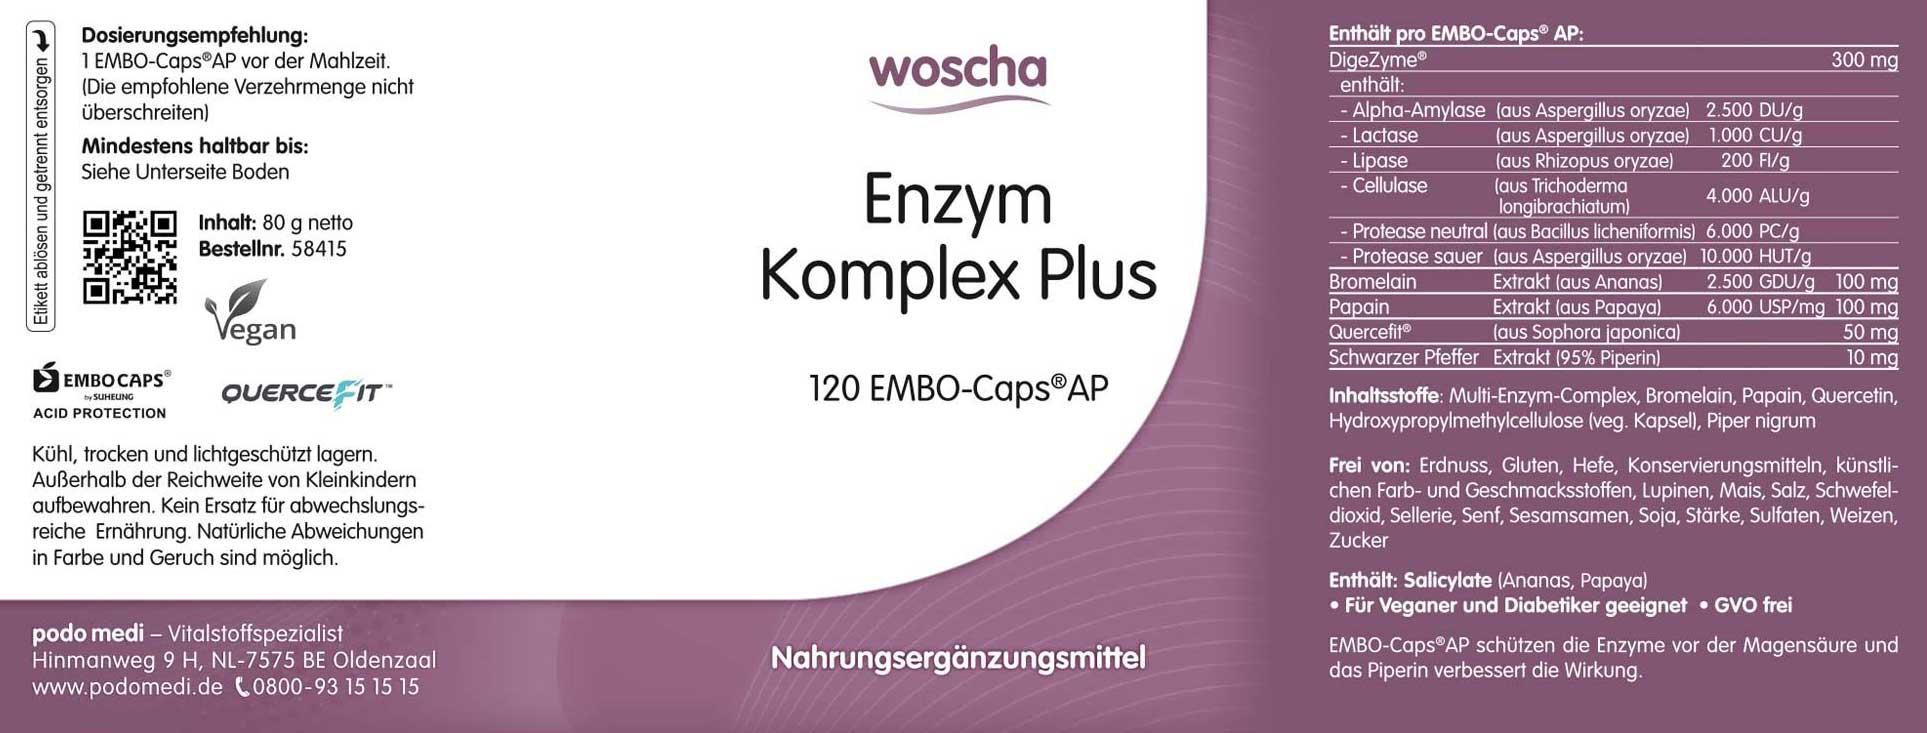 Woscha Enzym Komplex Plus von podo medi beinhaltet 120 Kapseln Etikett